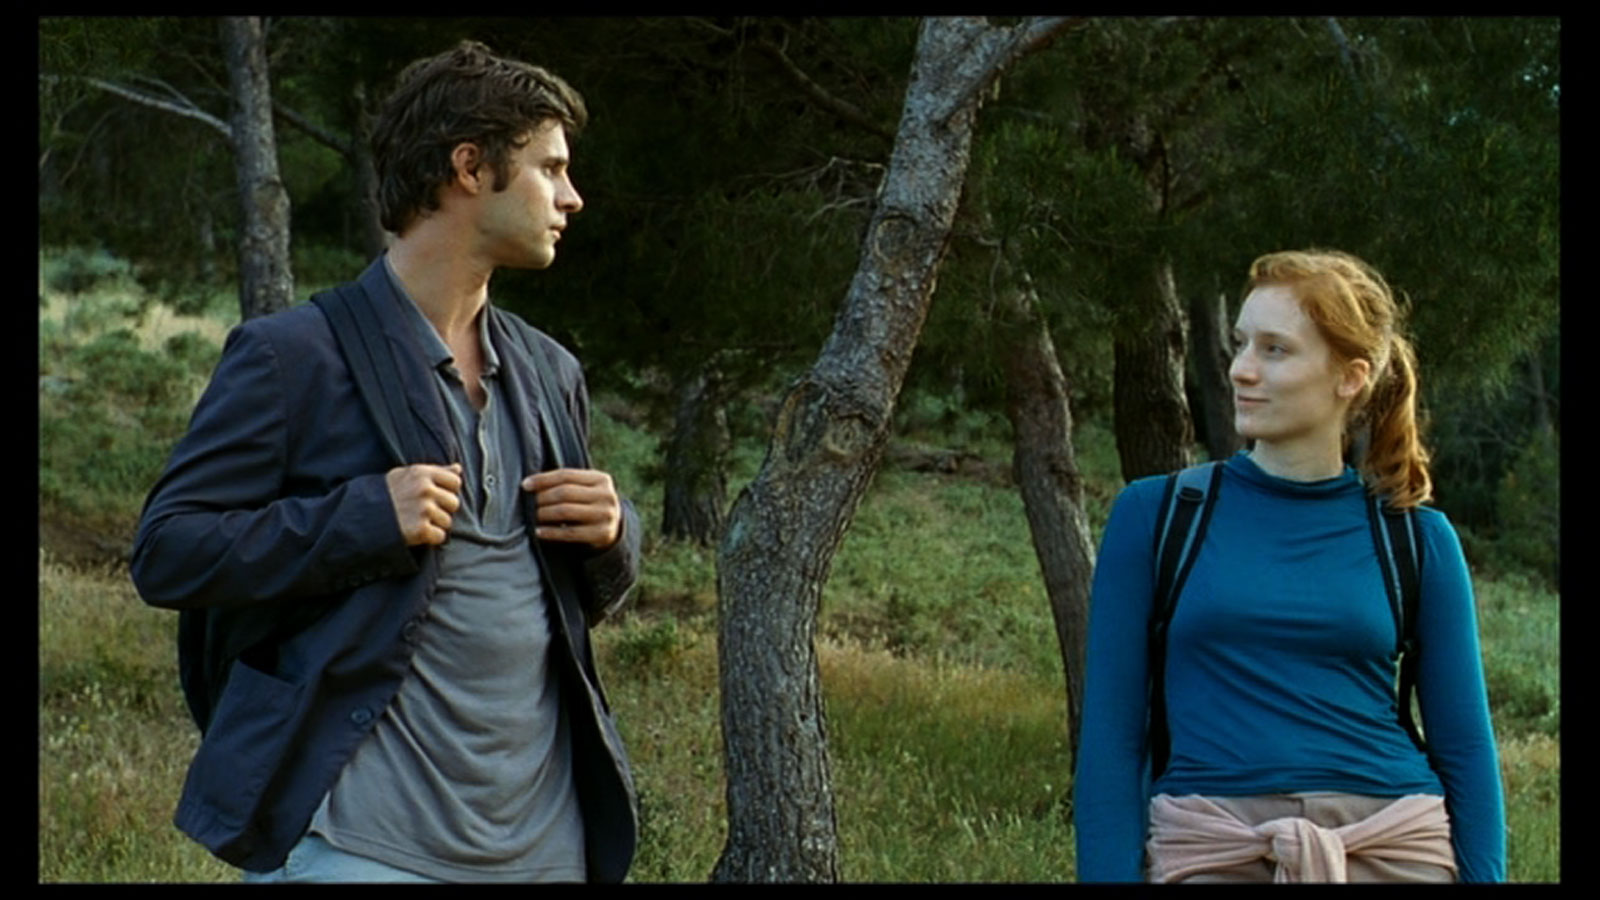 //www.occitanie-films.netUn homme et une femme se baladent, équipés de sacs à dos, dans une forêt